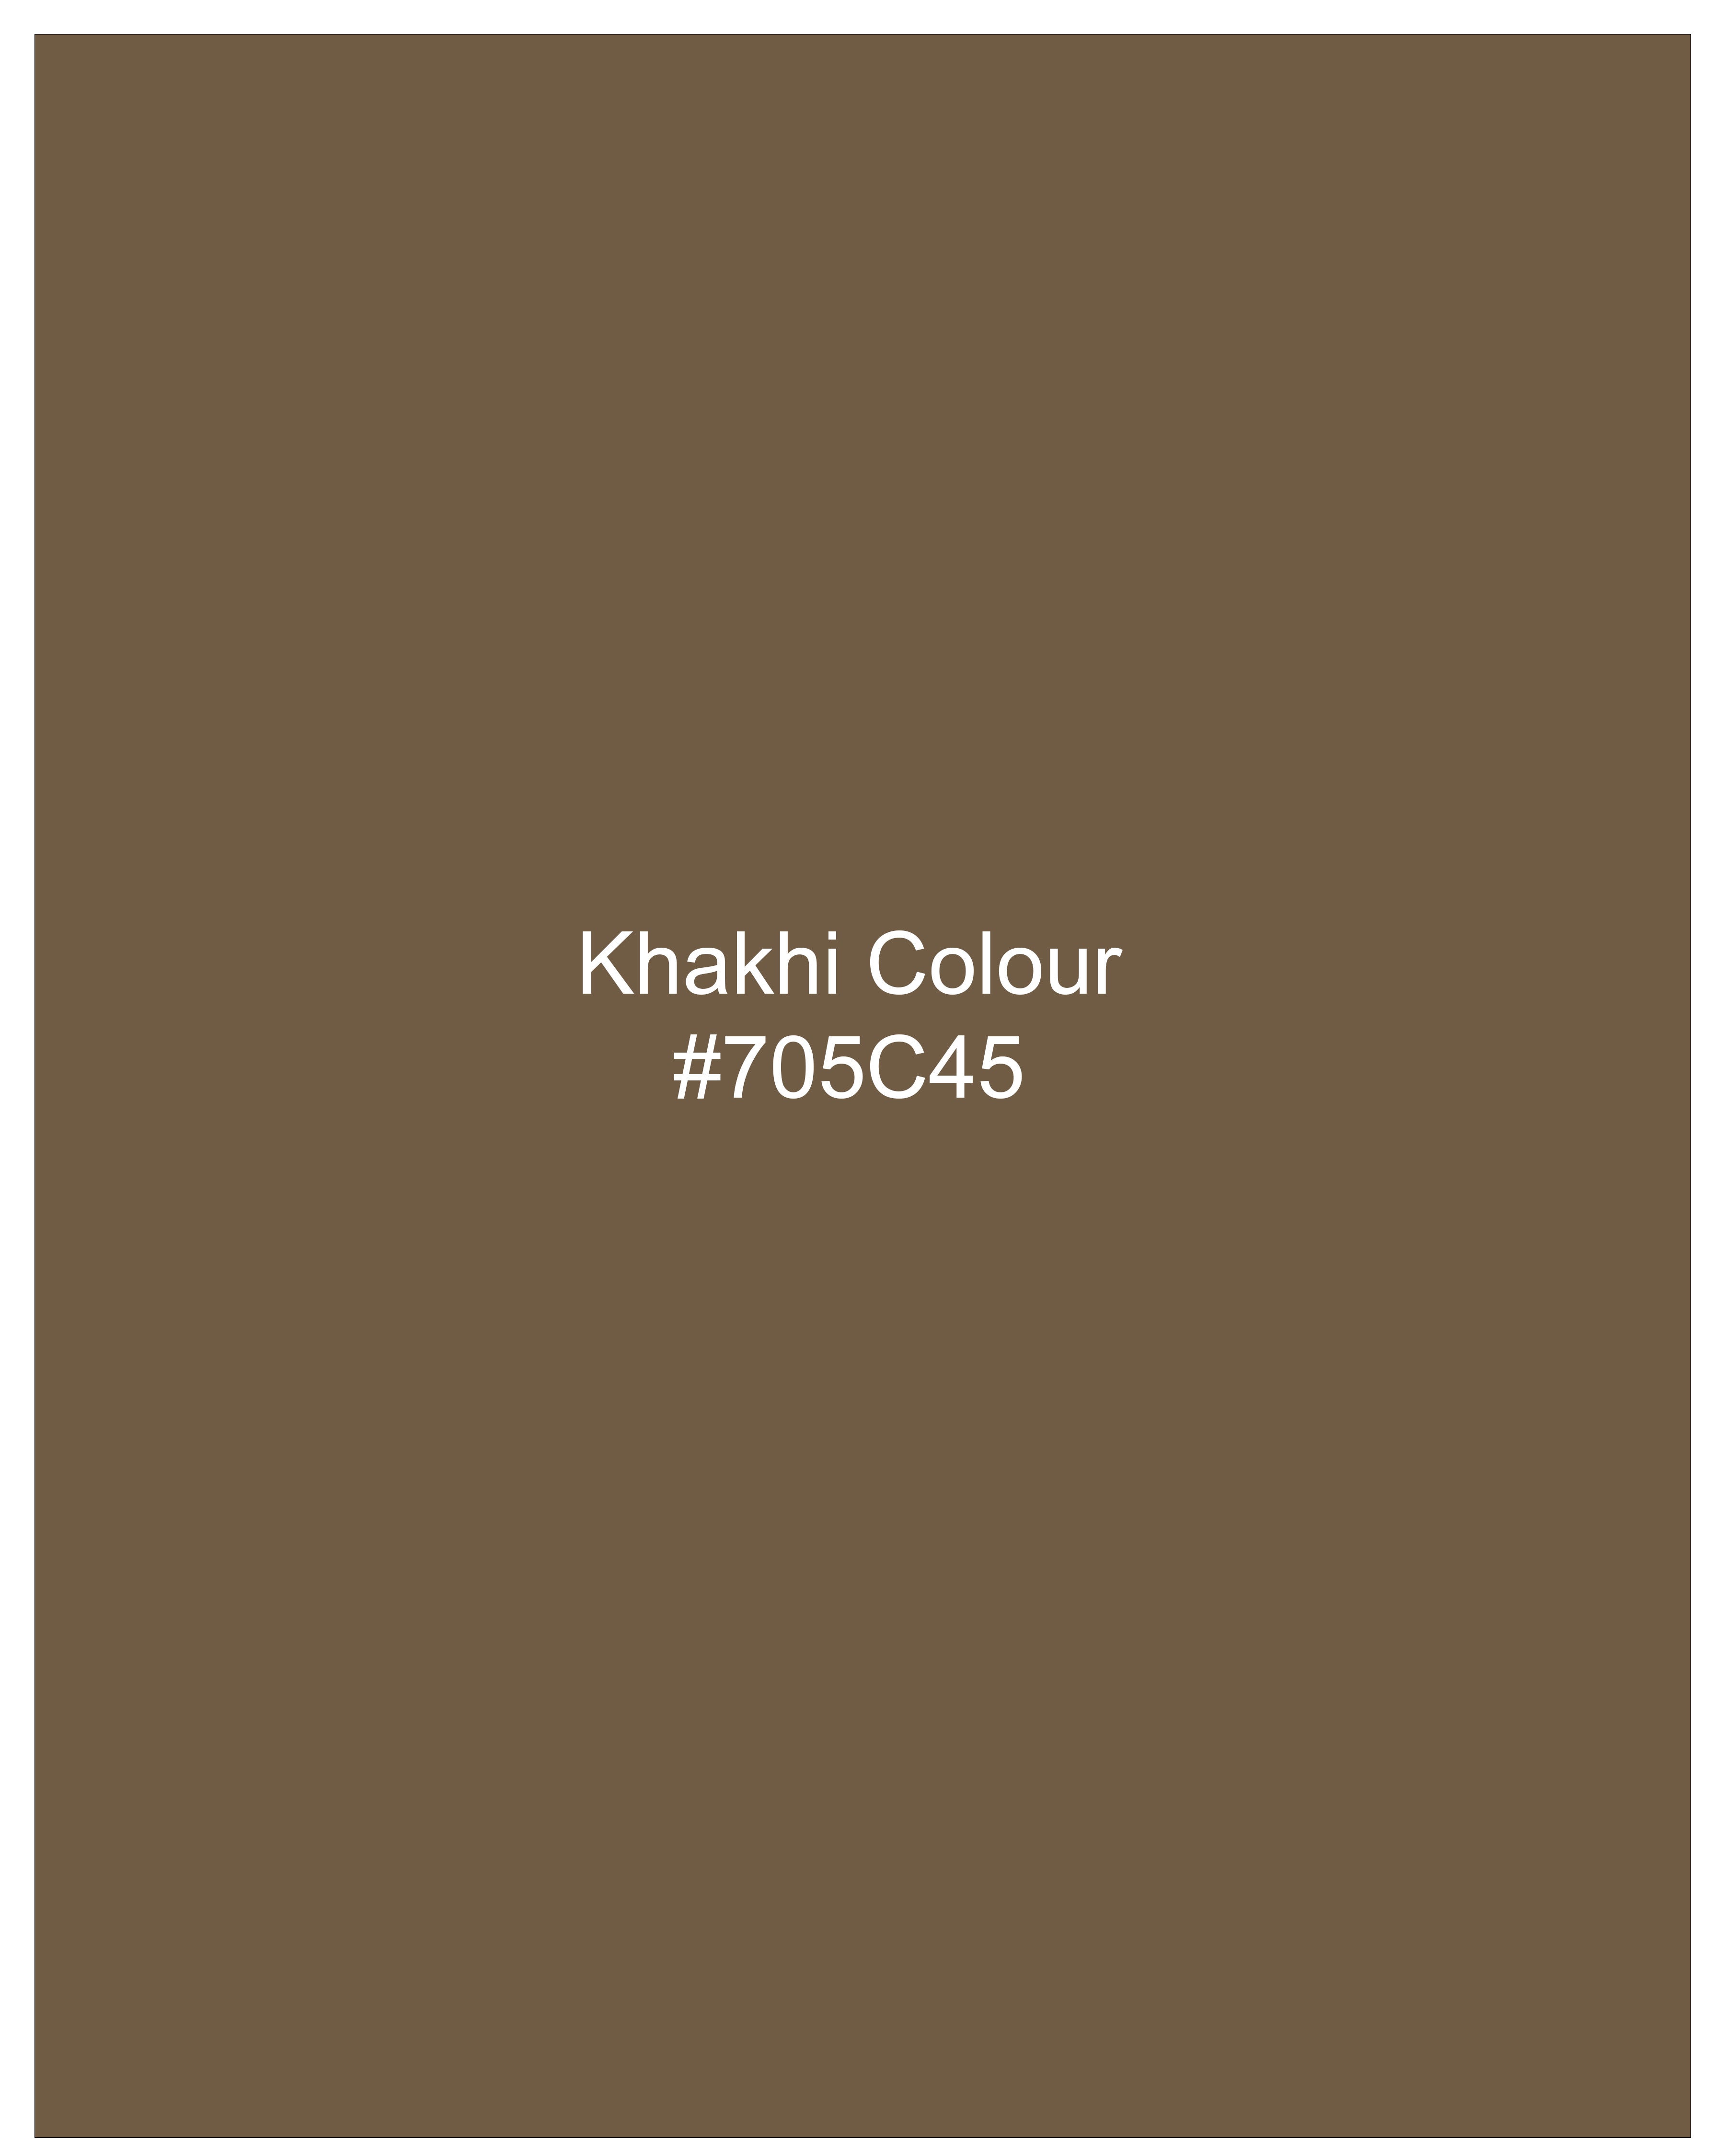 Khaki Brown Textured Nehru Jacket WC2463-36, WC2463-38, WC2463-40, WC2463-42, WC2463-44, WC2463-46, WC2463-48, WC2463-50, WC2463-52, WC2463-54, WC2463-56, WC2463-58, WC2463-60